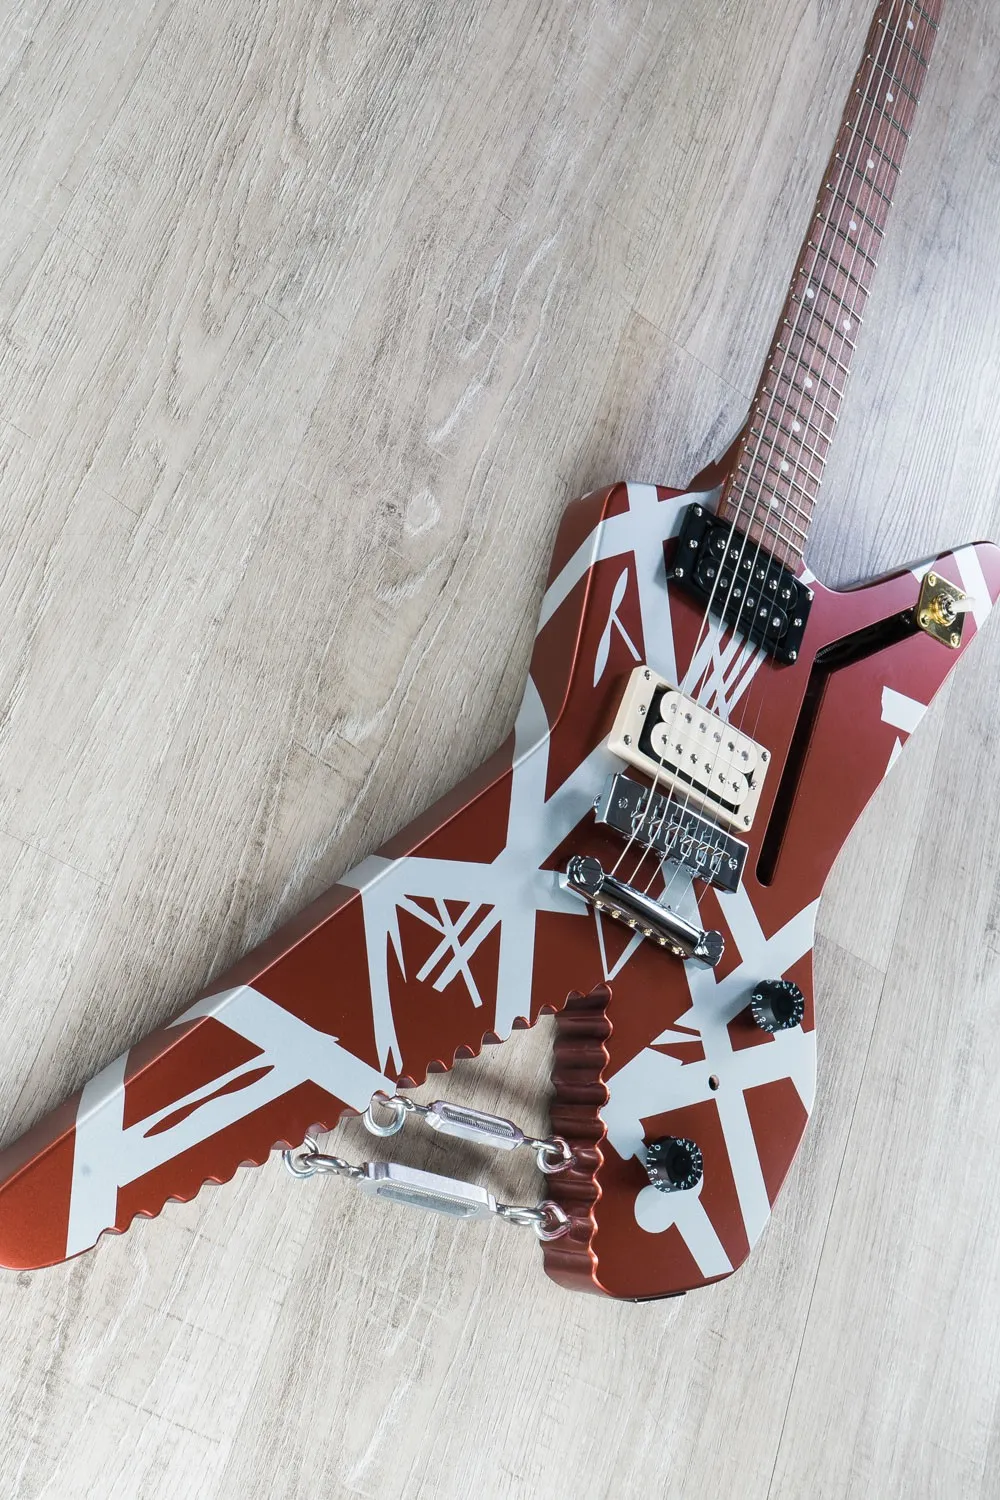 Edward Van Halen Series de rayas Sáter Satin Uretane Borgoña Silver Stripes Electric Guitar Chrome Ganchos de los ojos con giros, alambre de trenza